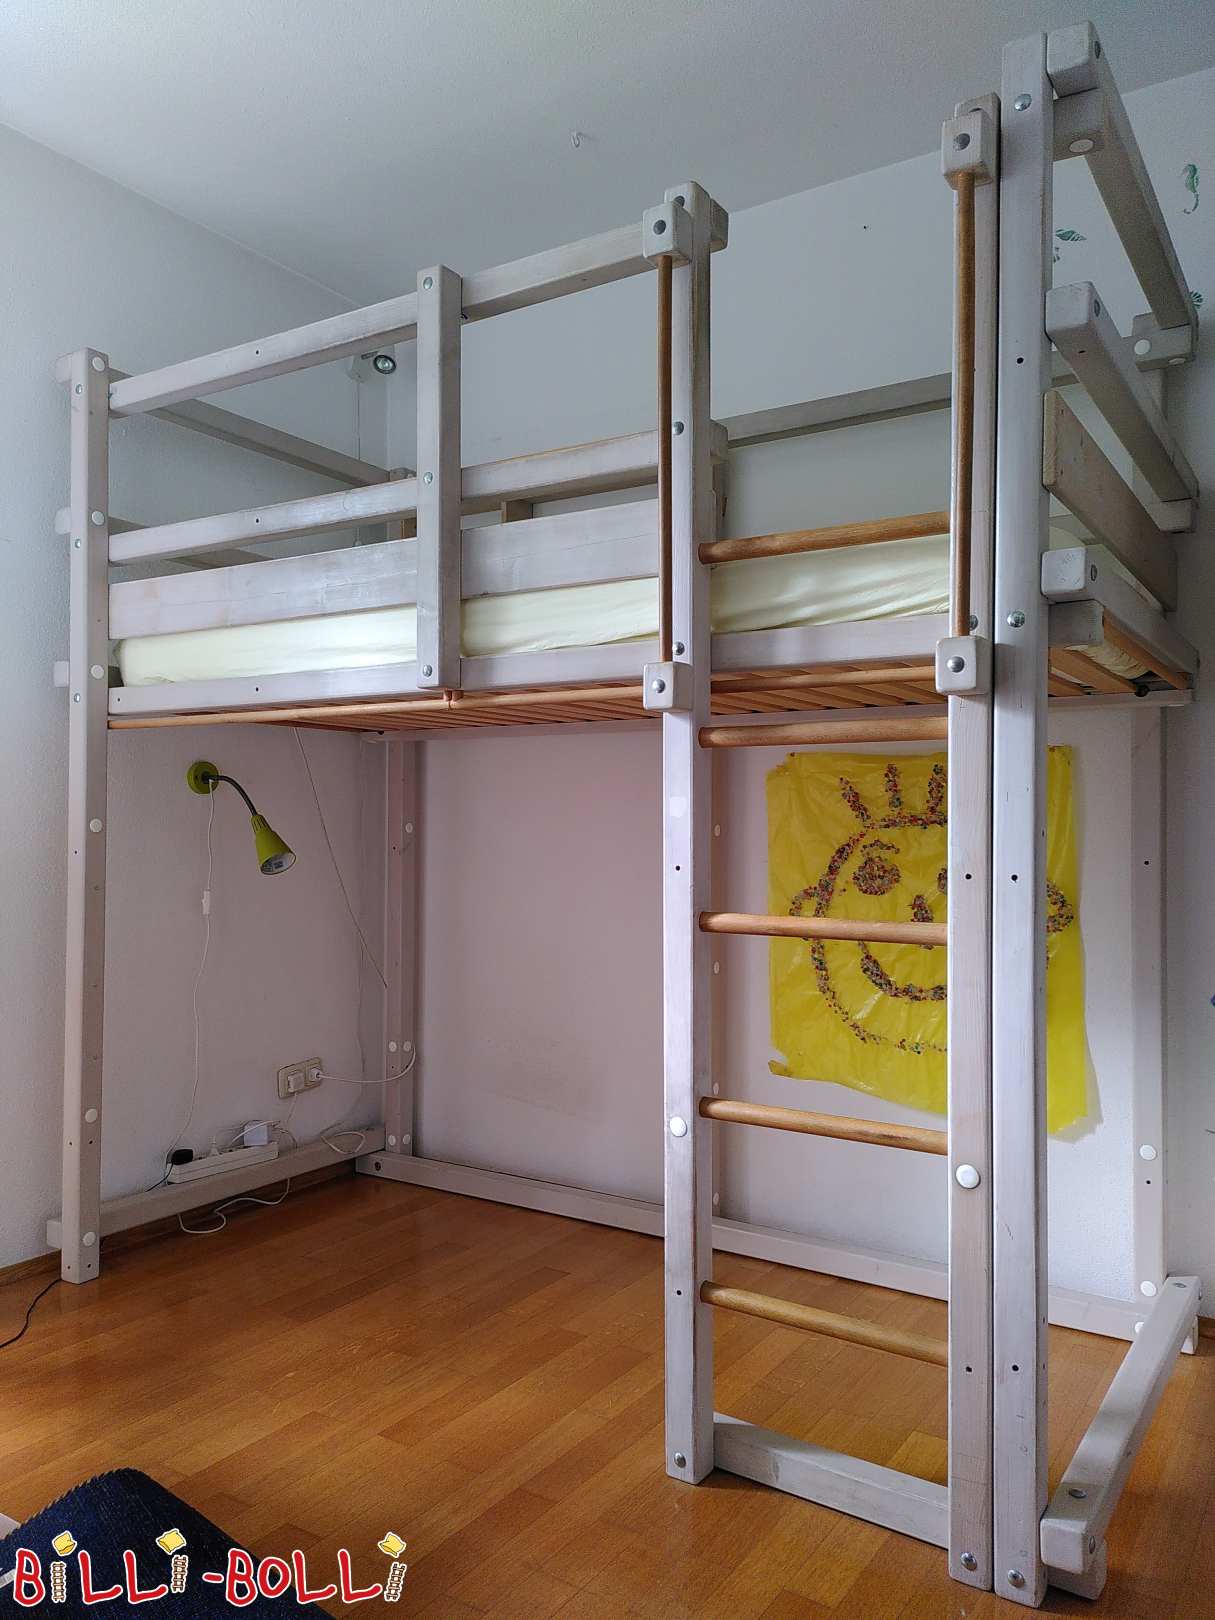 Gojenje podstrešne postelje s posteljno polico v boru, belo zastekljeno (Category: Podstrešna postelja, ki raste z otrokom used)